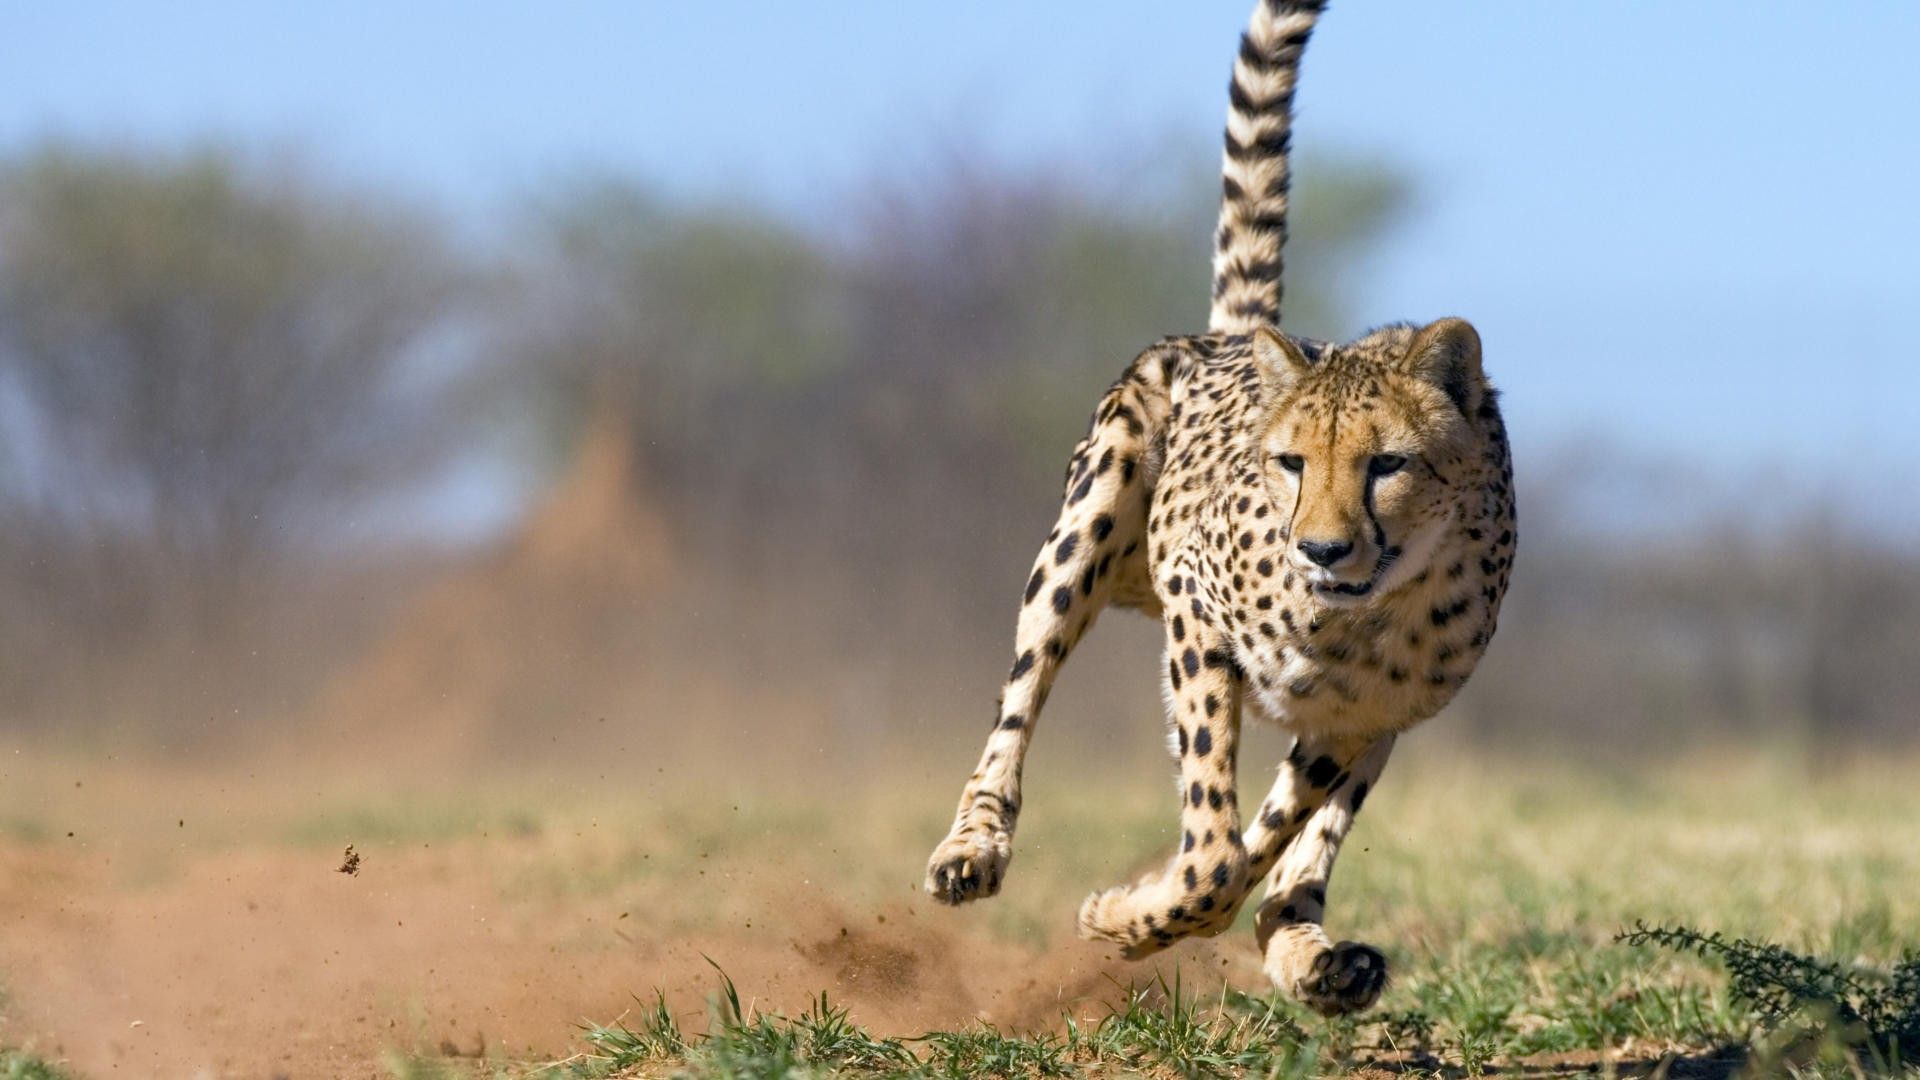 Running Cheetah Photo